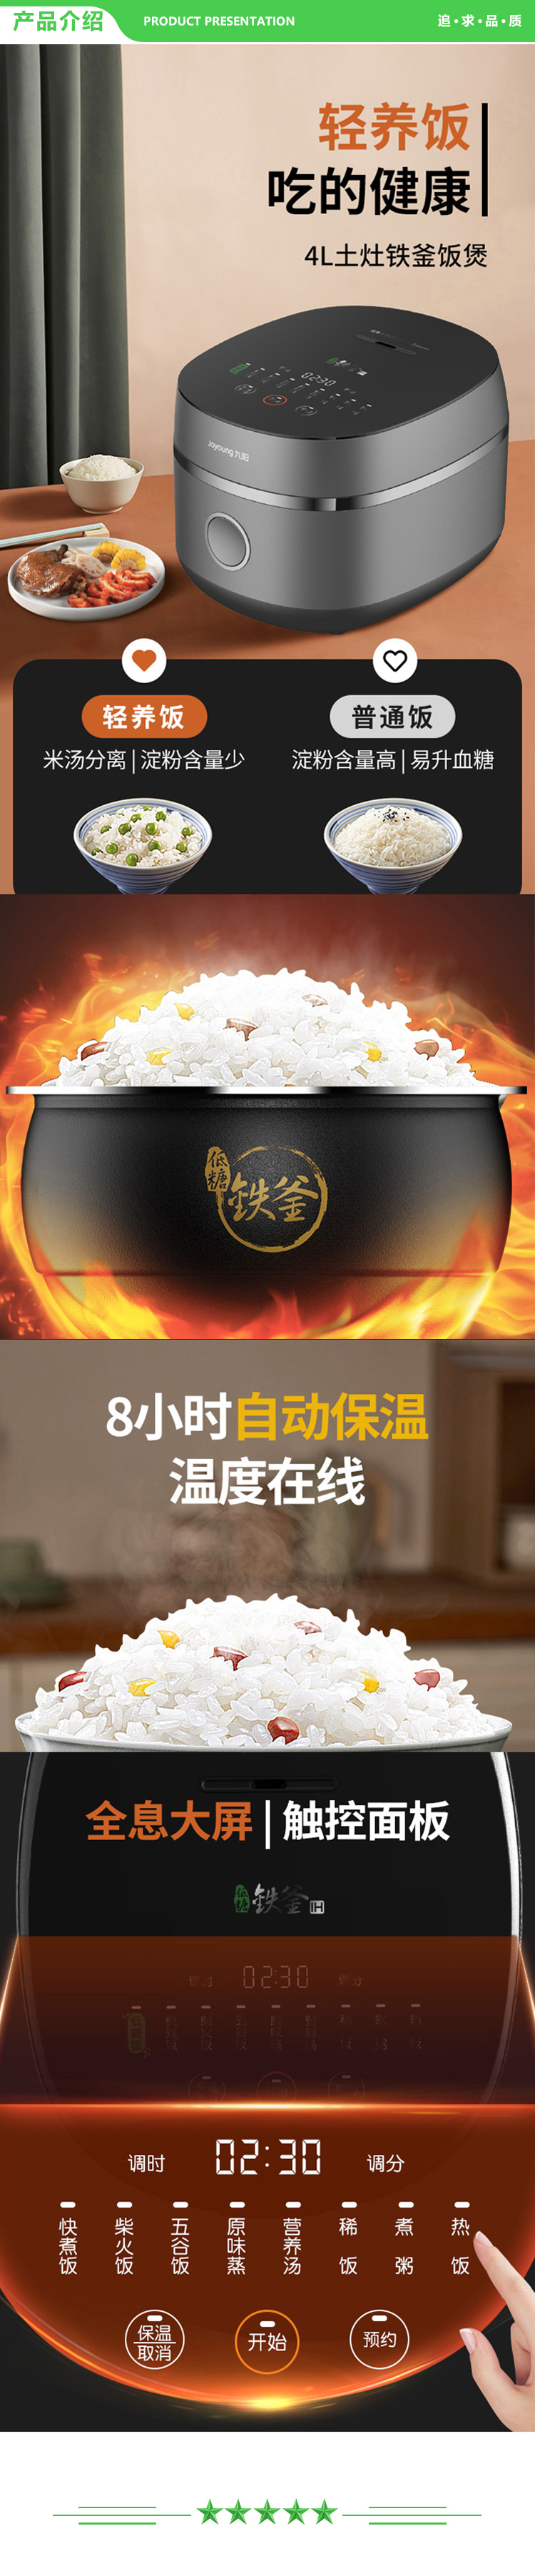 九阳 Joyoung F-40TD01 电饭煲 智能预约多功能铁斧内胆IH电磁加热电饭锅 2.jpg